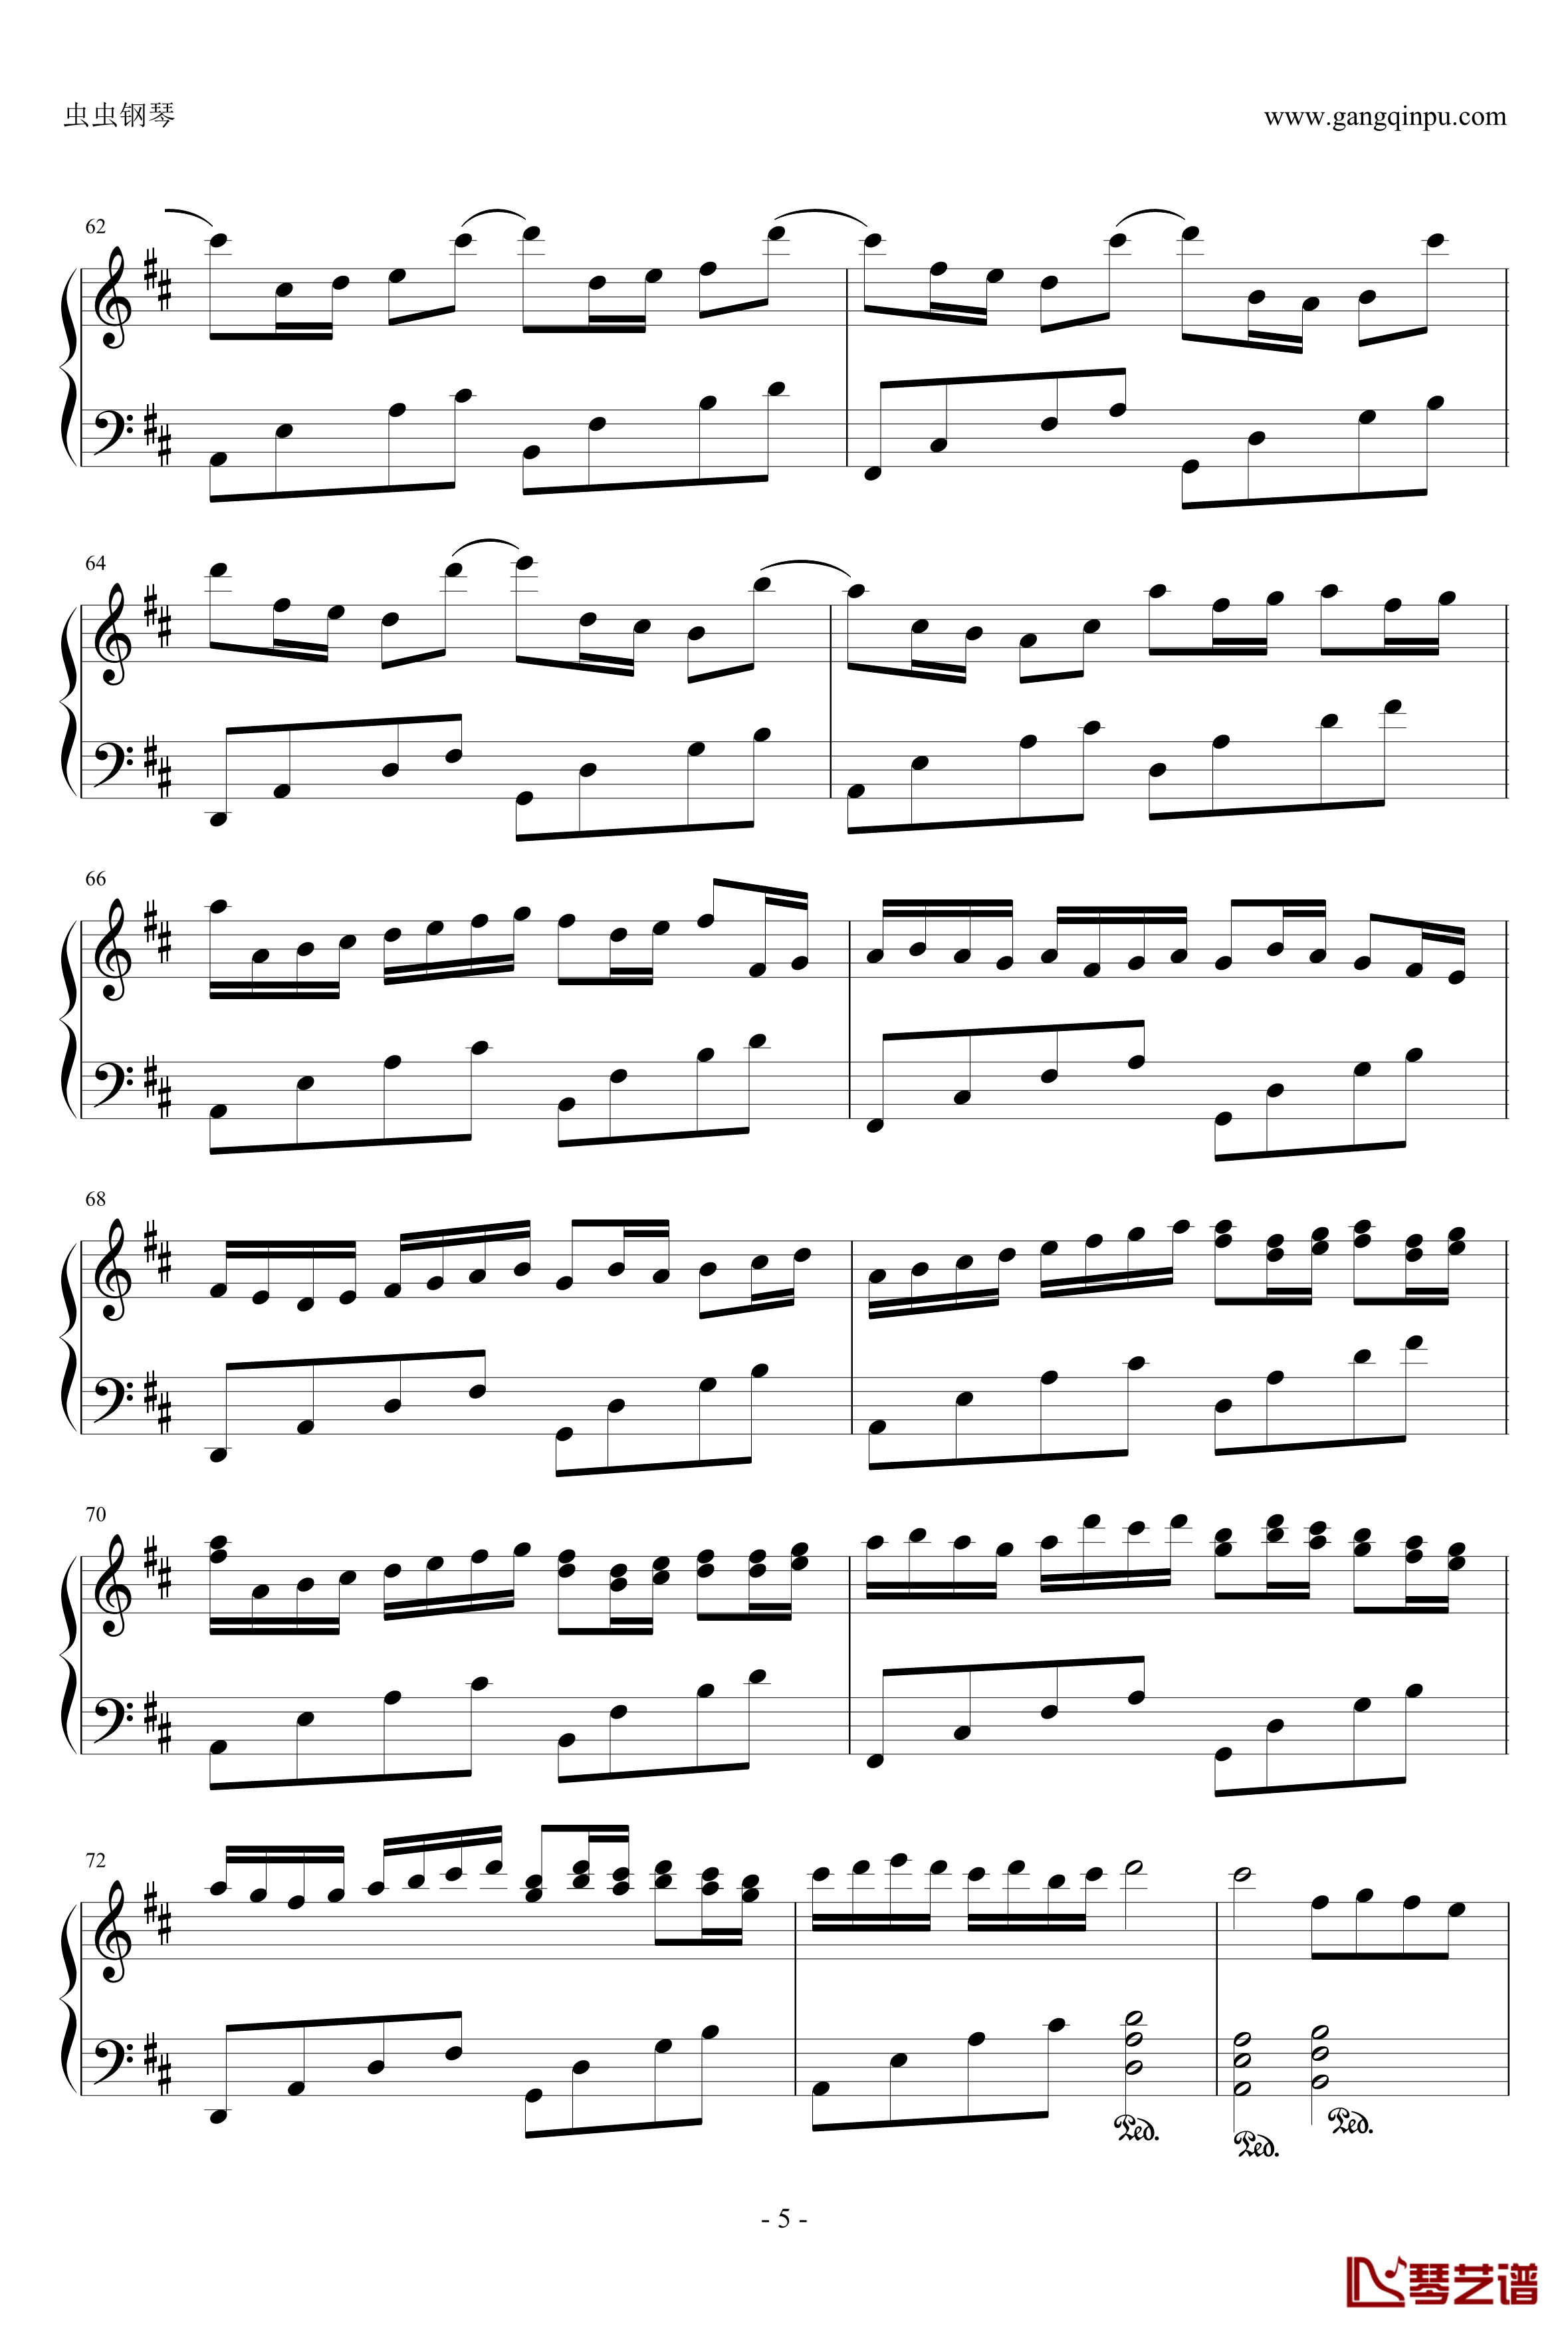 卡农：大爱人间钢琴谱-完整版-帕赫贝尔-Pachelbel5